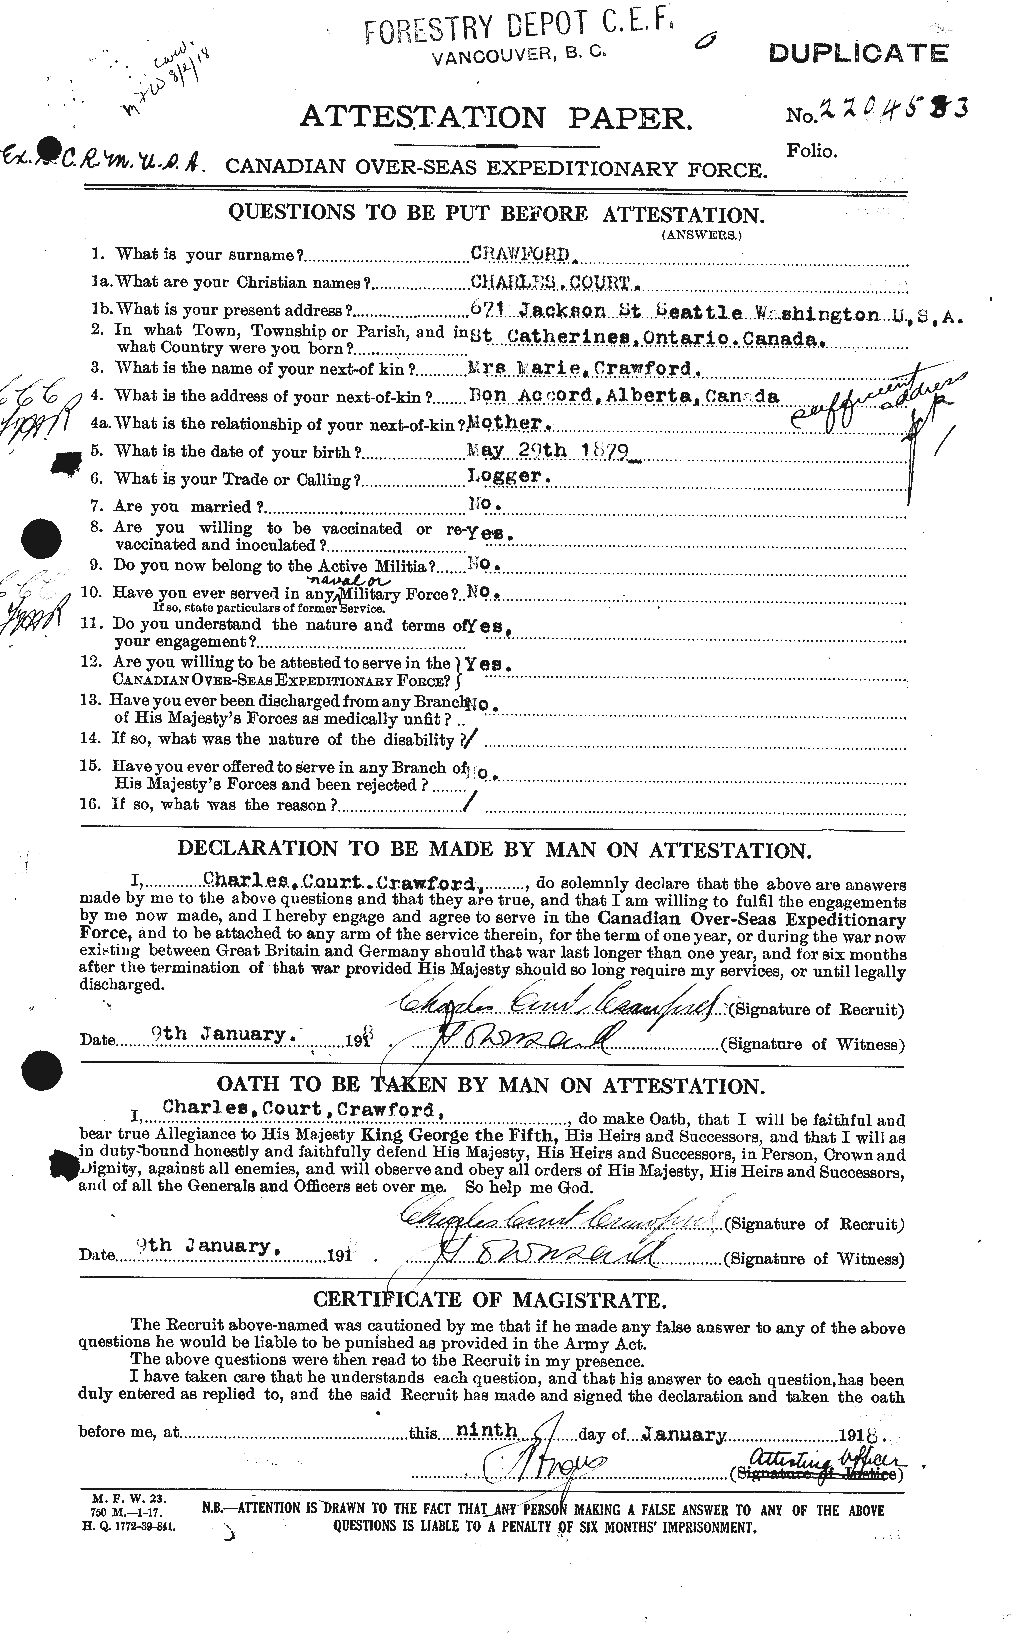 Dossiers du Personnel de la Première Guerre mondiale - CEC 060842a